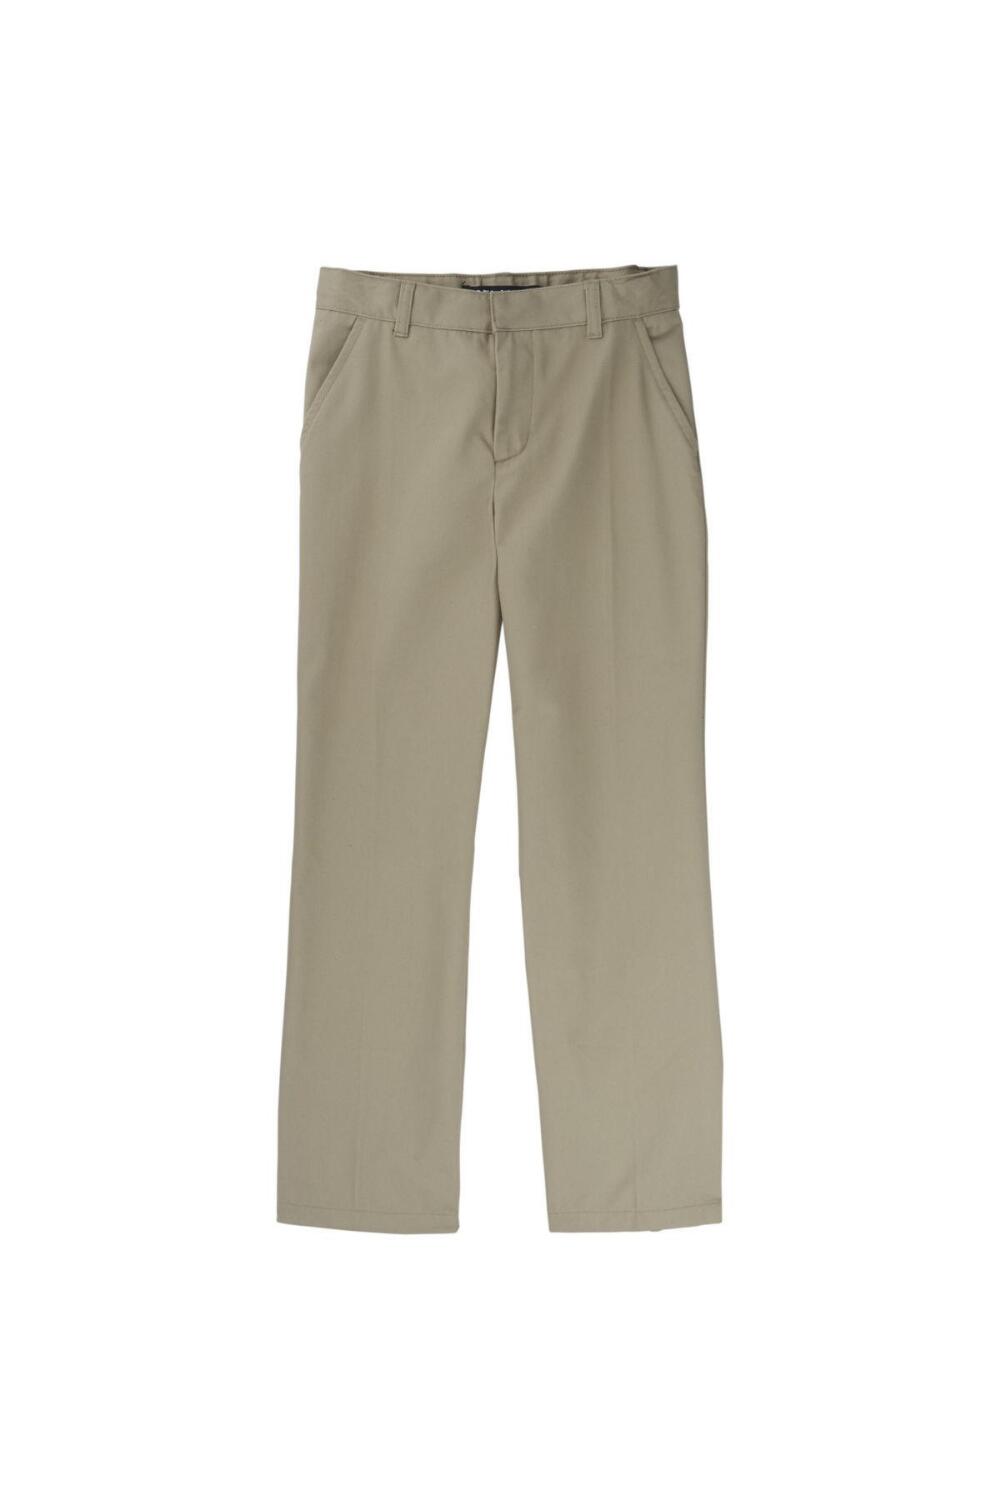 Boy's Adjustable Waist Double Knee Pant (Pant Color: Khaki, Pant Size: Size 4)